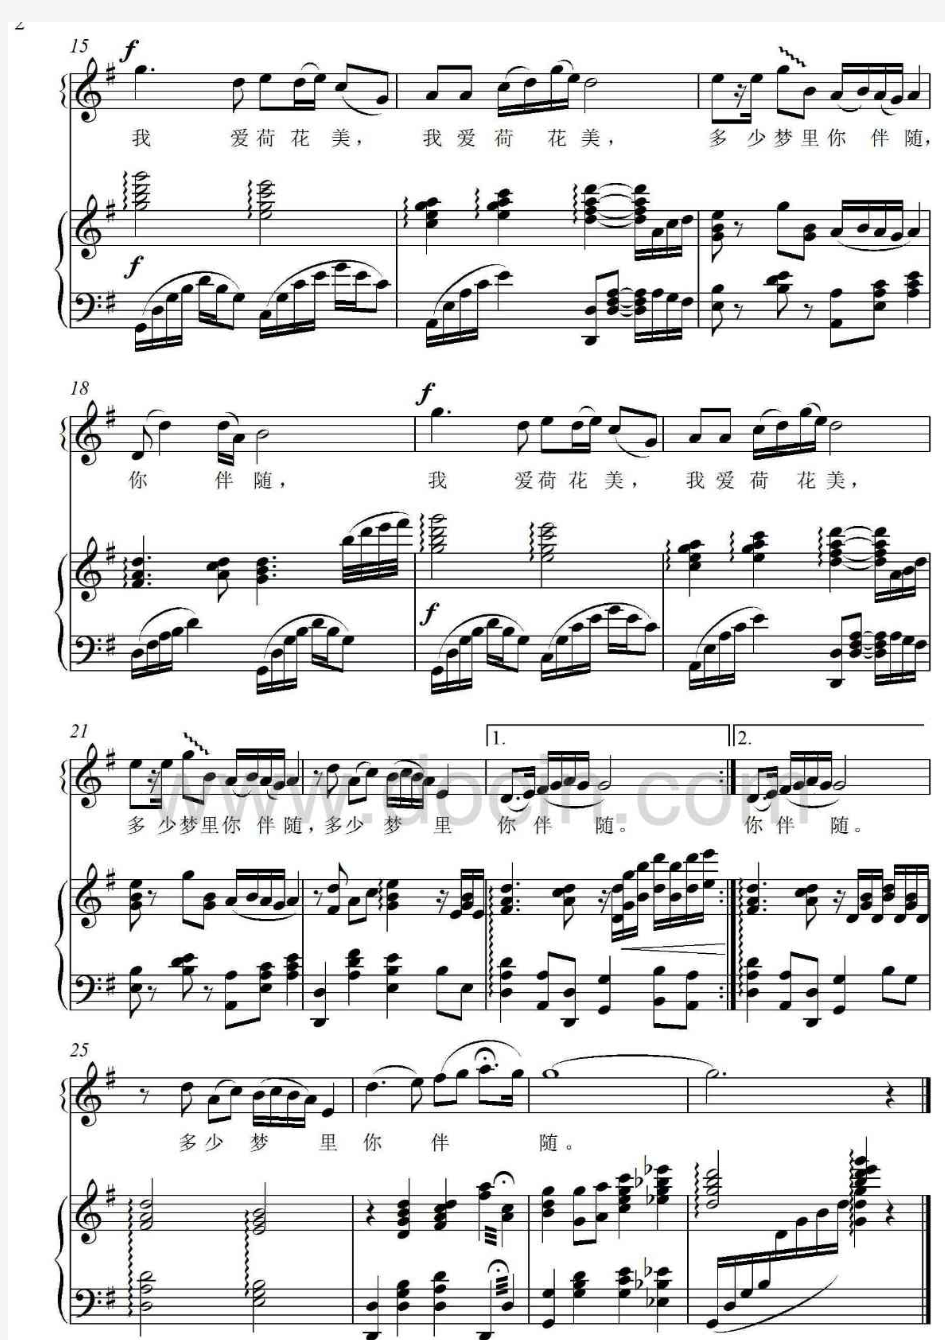 荷花梦-【原调-G】-钢琴伴奏正谱钢琴伴奏正谱 高考 声乐伴奏谱 钢琴谱  五线谱 谱